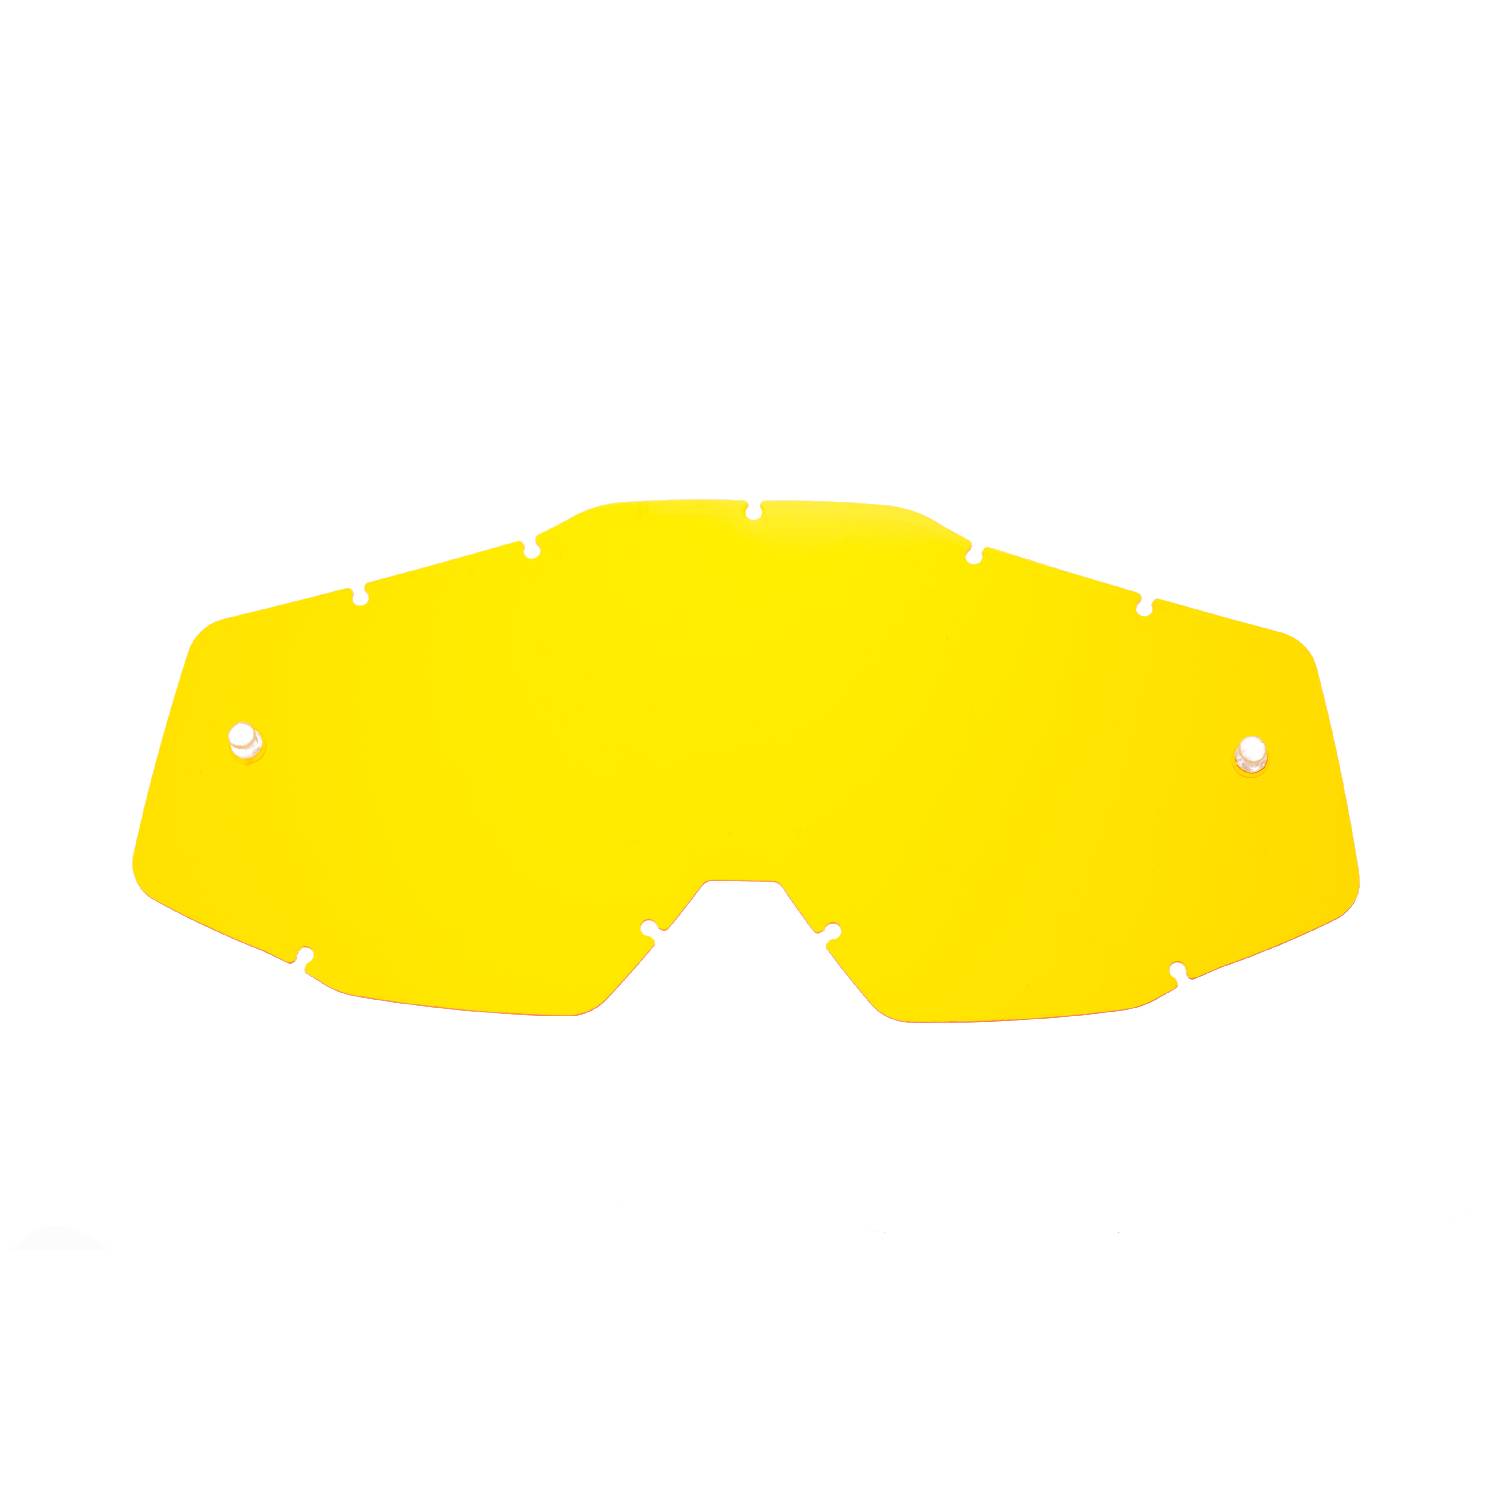 SeeCle.it SE-41S205-HZ Lente di ricambio giallo compatibile per occhiale/maschera 100% RC-ST-AC-ME NON COMPATIBILE GENERAZIONE 2